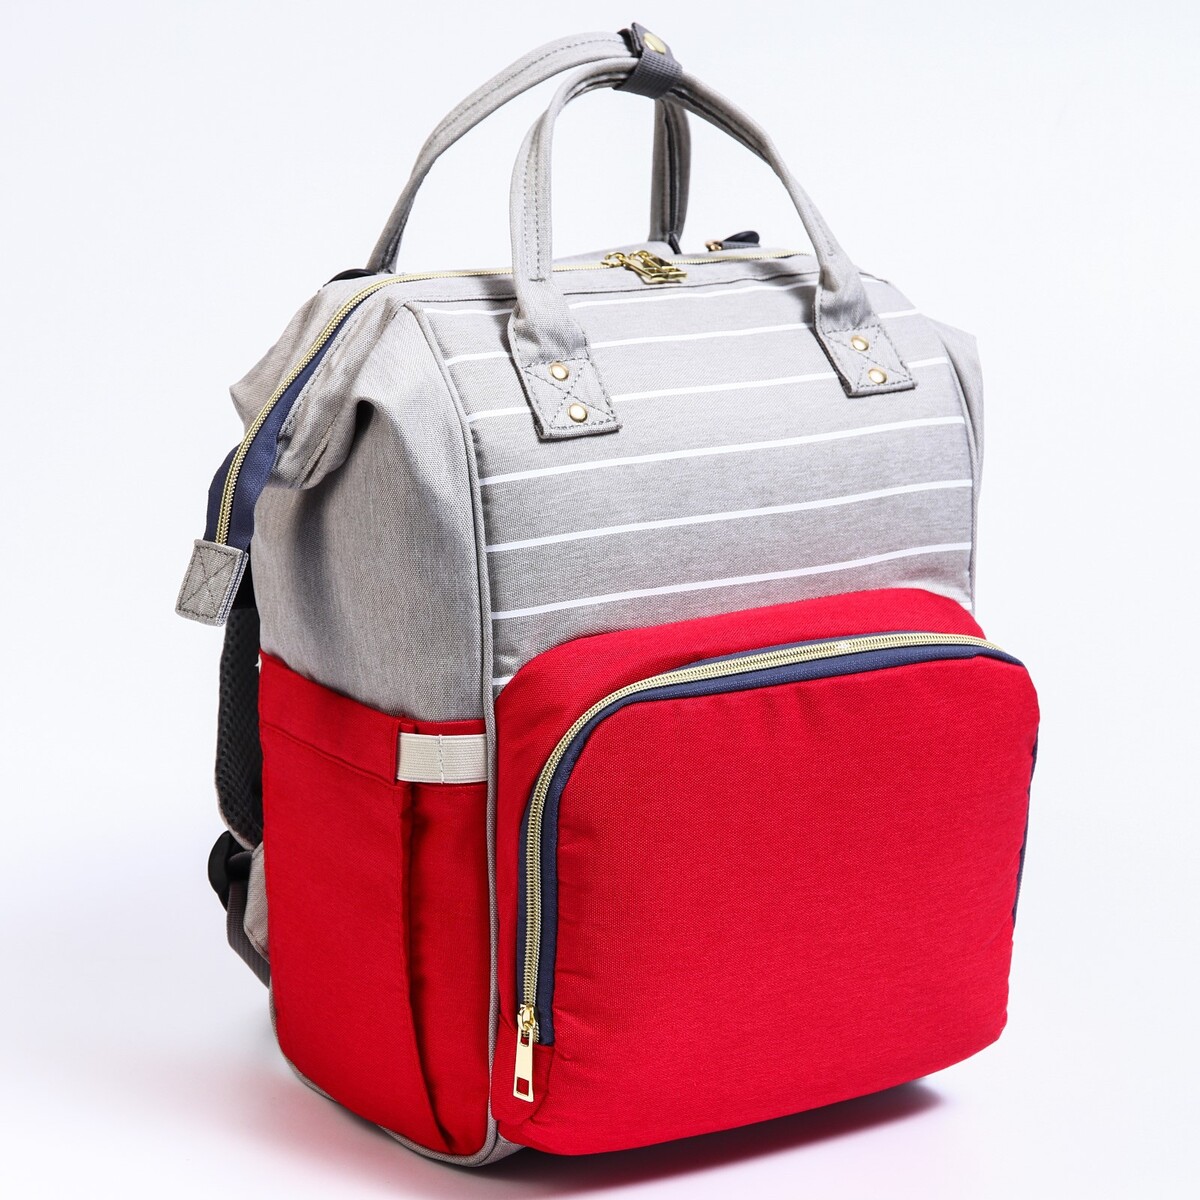 Рюкзак женский с термокарманом, термосумка - портфель, цвет серый/красный термосумка на молнии 9 л длинный ремень серый